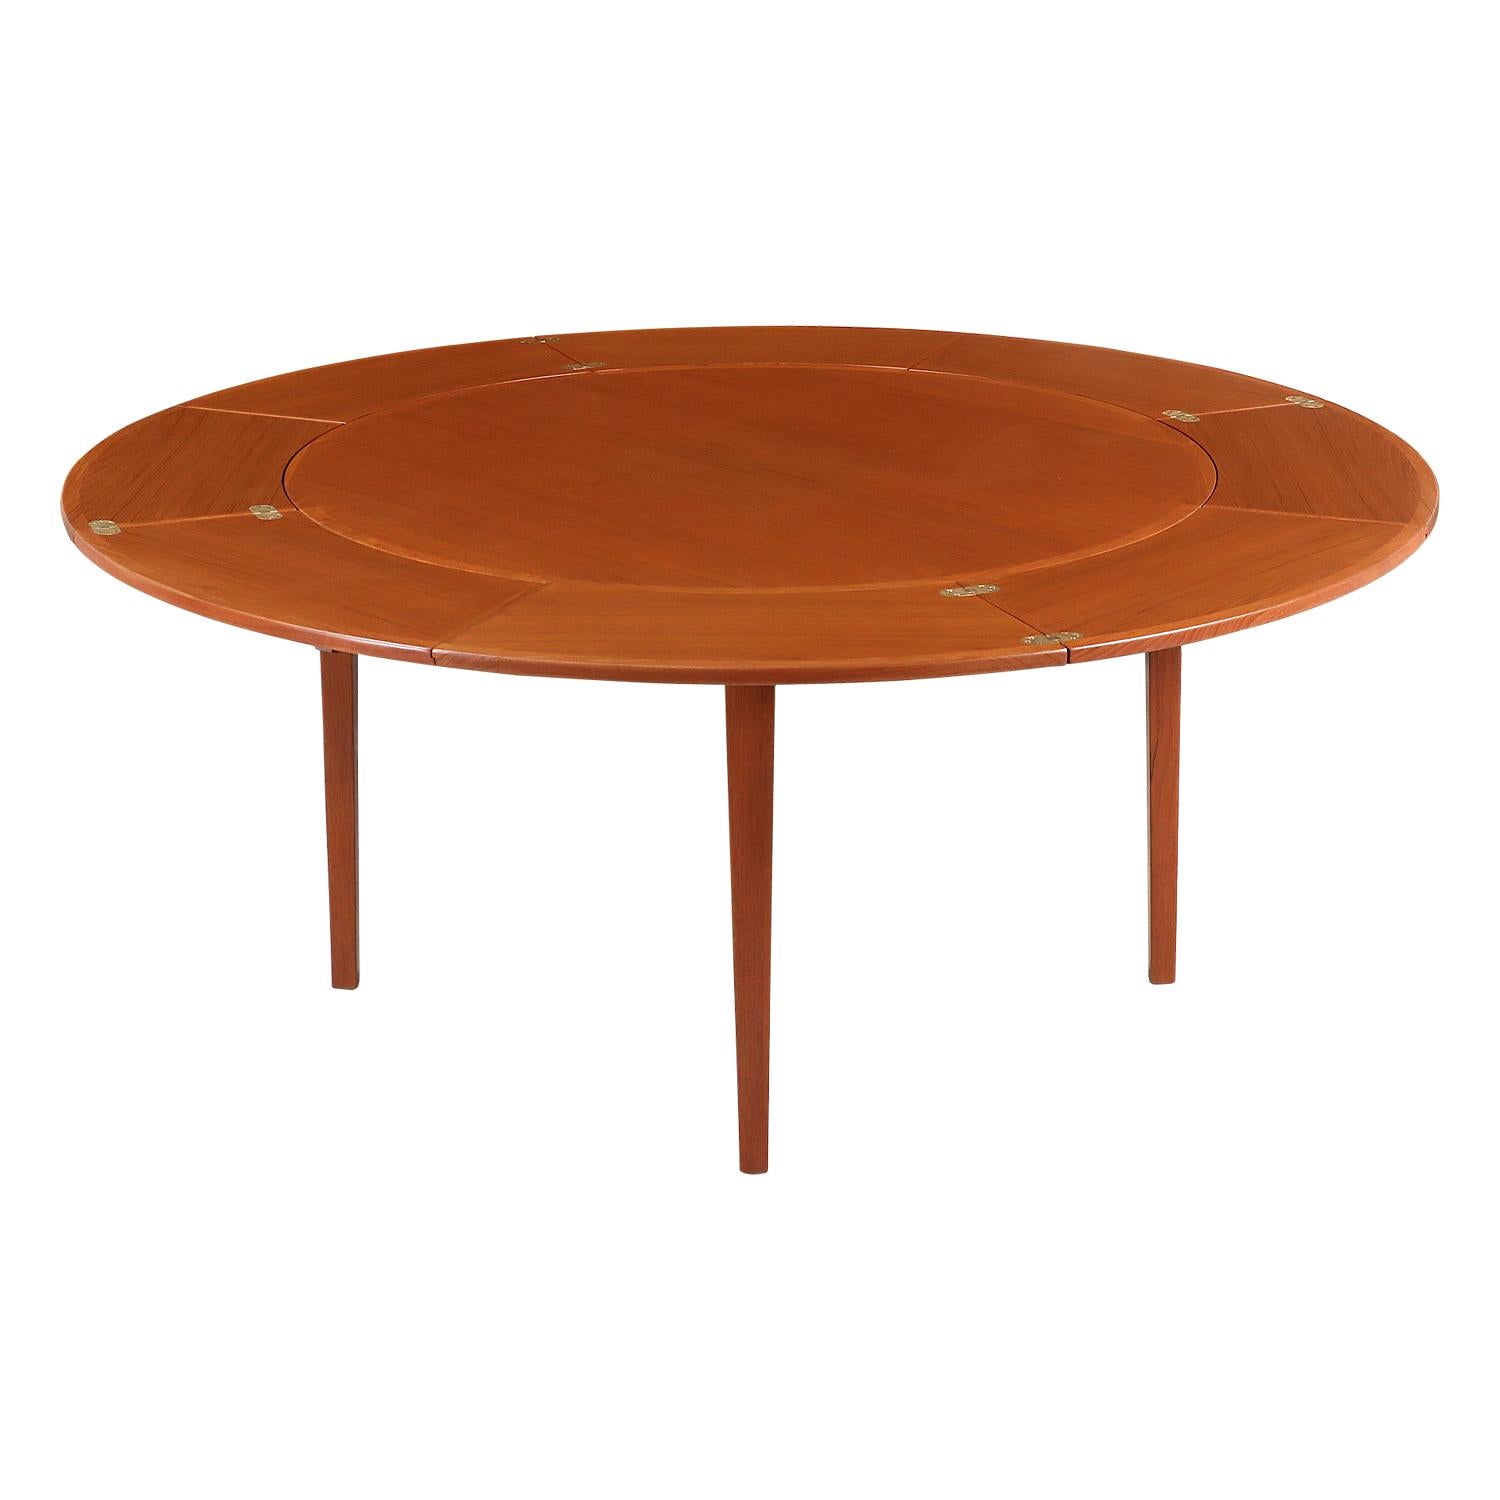 Danish Modern “Flip-Flap” Teak Dining Table by Dyrlund